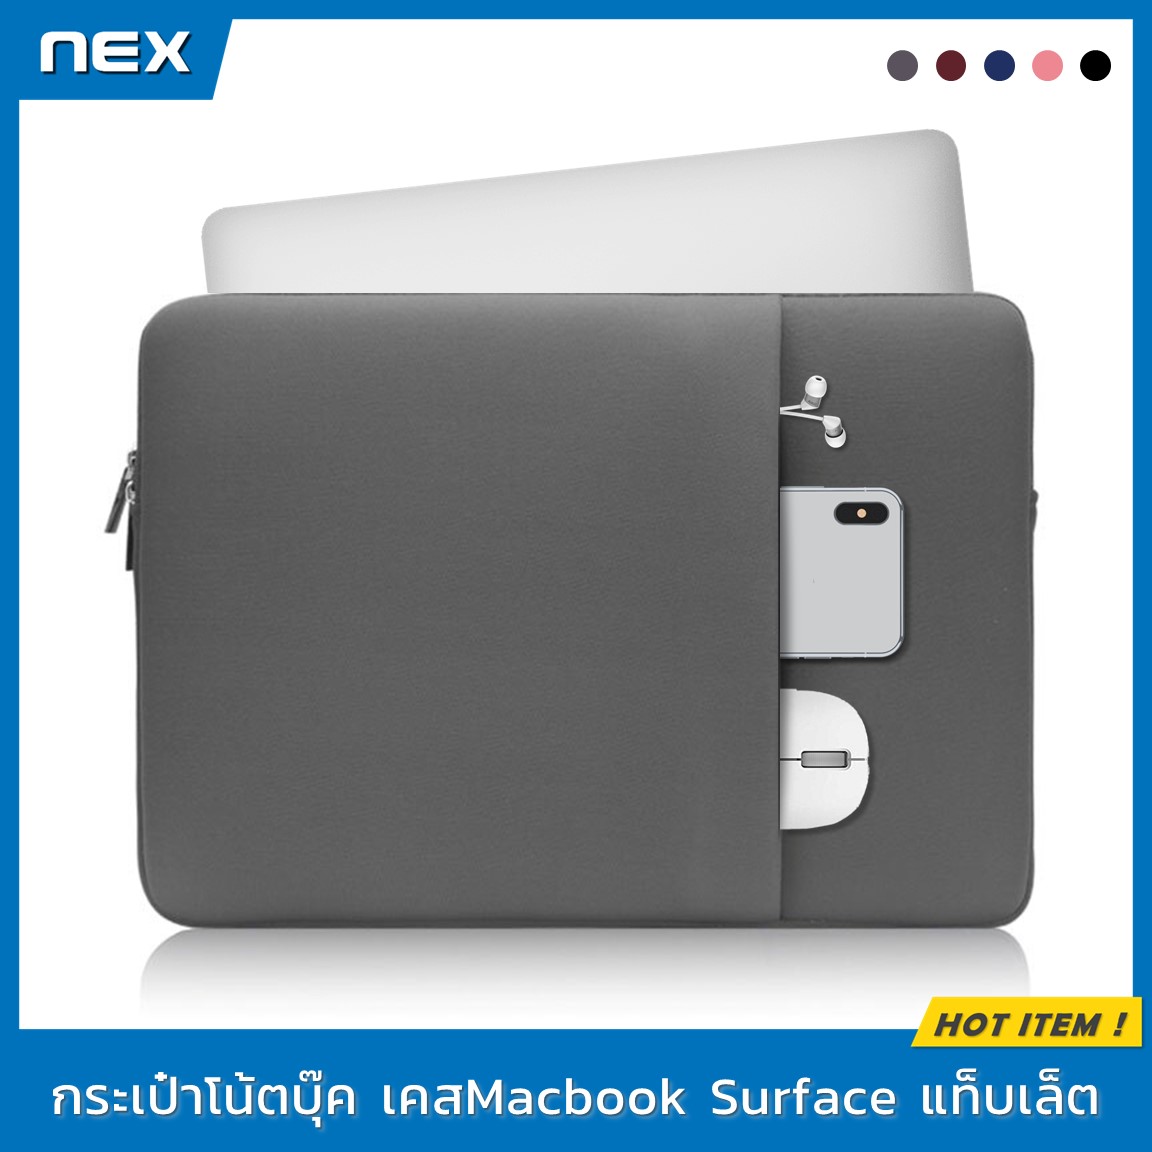 NEX กระเป๋าโน๊ตบุ๊ค เคสโน๊ตบุ๊ค 13.3, 14, 15.6 นิ้ว ซองแล็ปท็อป กันรอย กันฝุ่น กันกระแทก กระเป๋าคอมพิวเตอร์ กระเป๋าMacbook เคสใส่MacBook Slim Laptop Case Cover